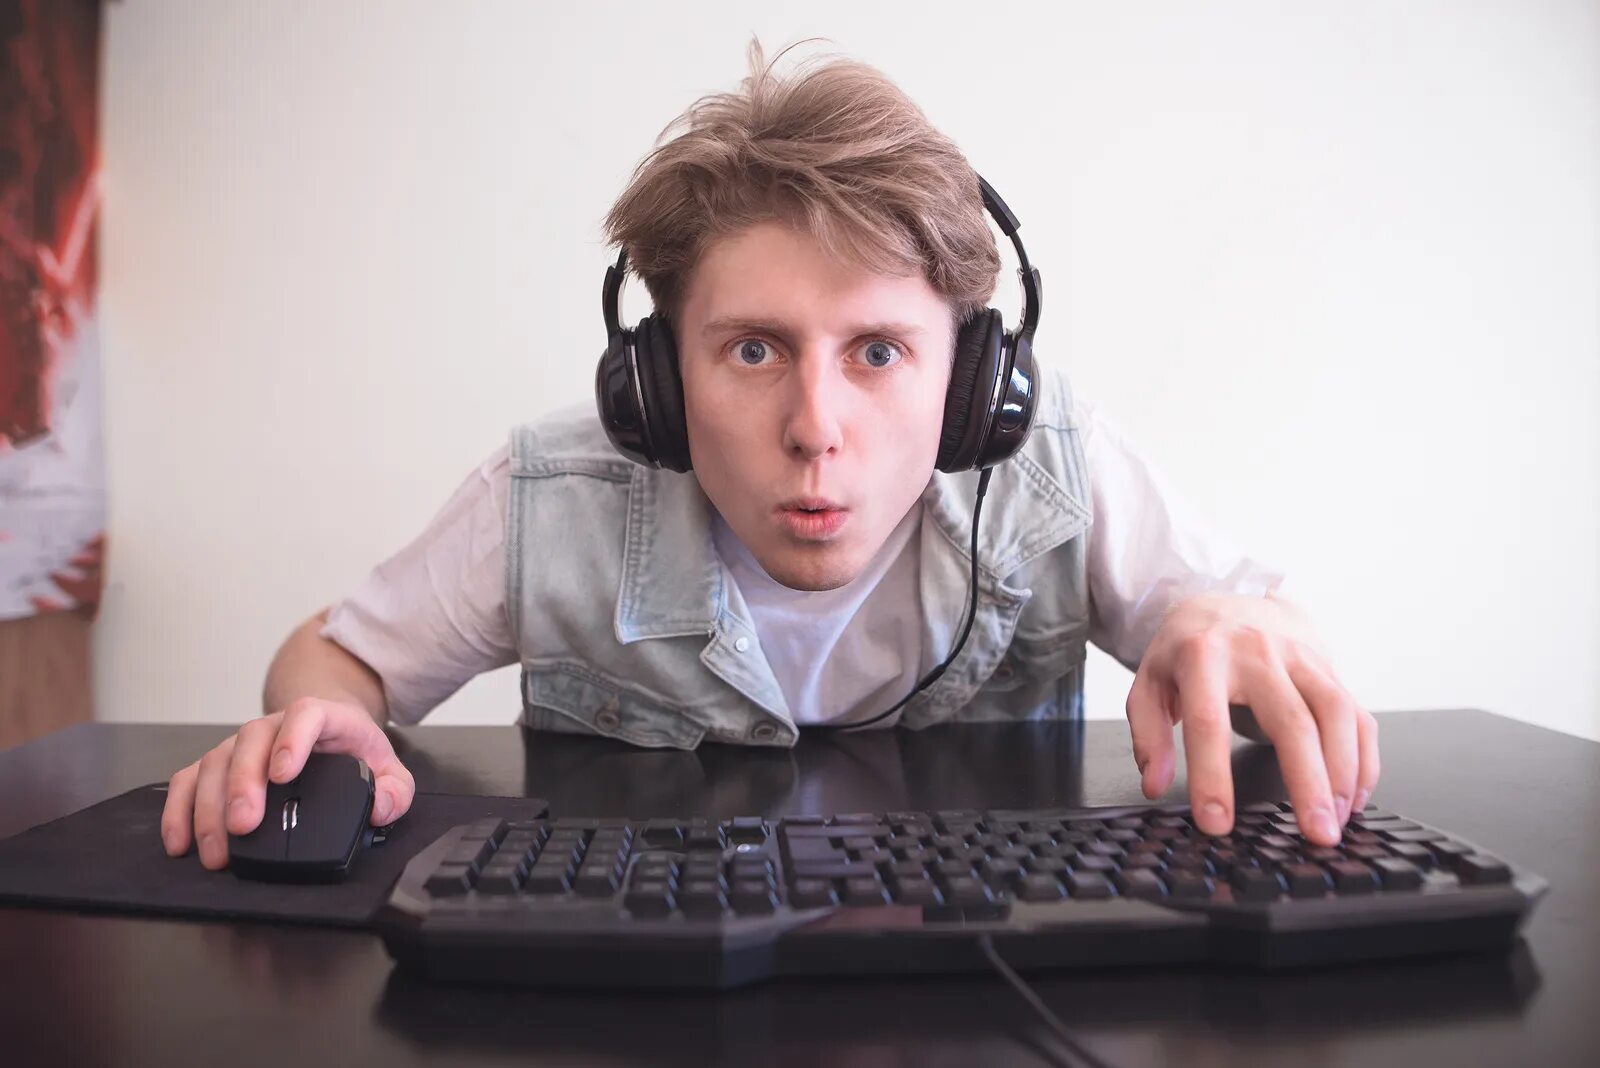 Лицо пк. Человек играющий в компьютерные игры. Подросток геймер. Подросток играет в компьютерные игры. Человек в наушниках за компьютером.